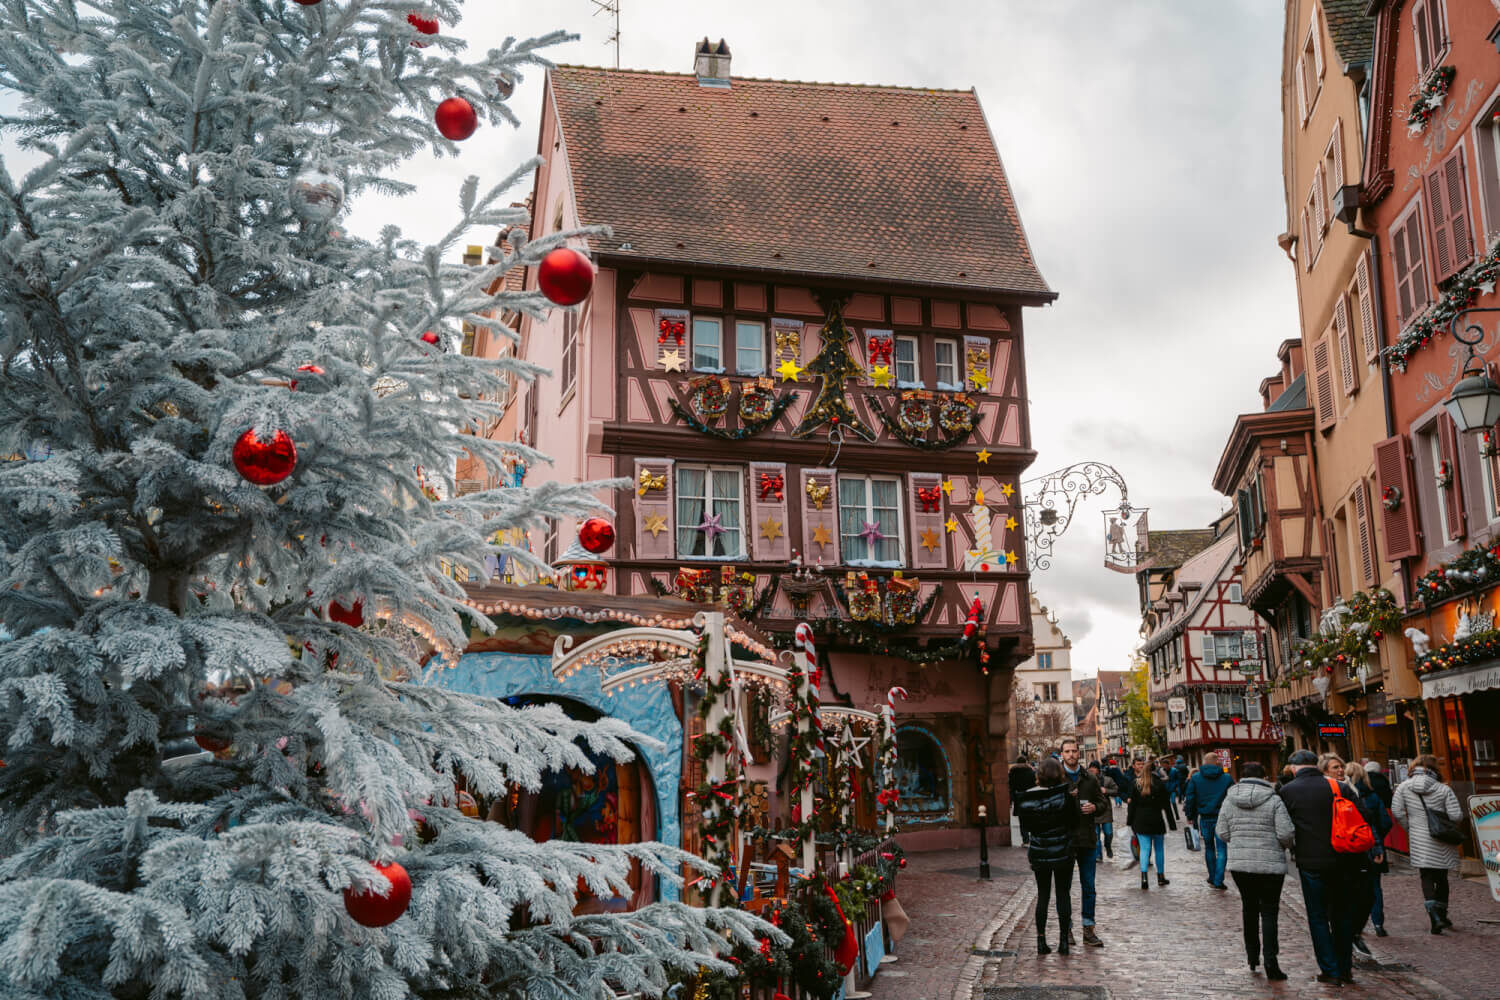 prim plan cu un brad decorat cu globuri rosii, iar in fundal o cladire alsaciana, cu barne de lemn, decorata festiv, pentru târgul de Crăciun din Colmar, Unul dintre cele mai frumoase târguri de Crăciun din Europa.